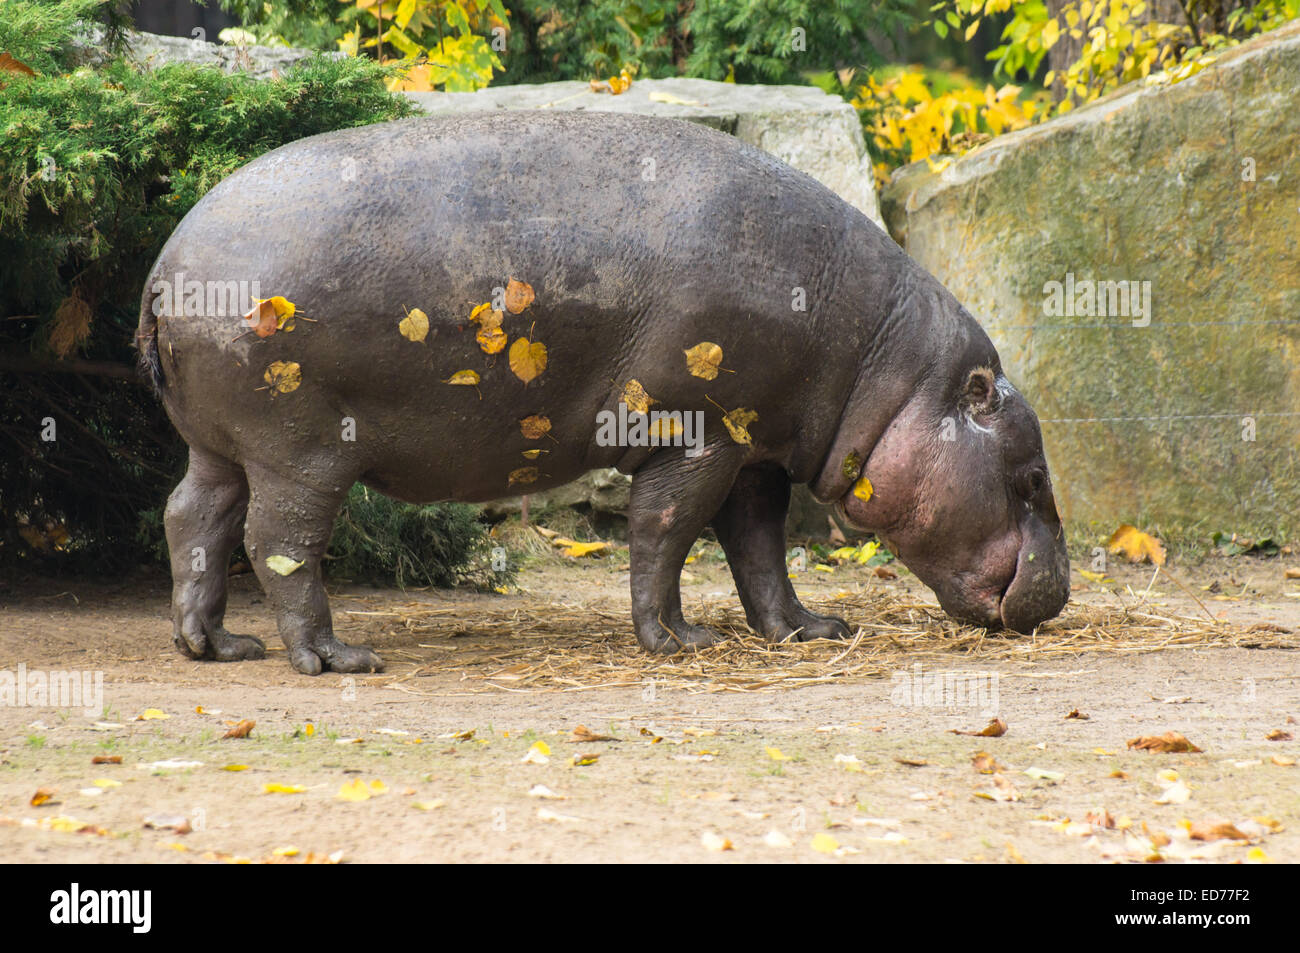 L'hippopotame pygmée au Zoo, Plock Pologne Banque D'Images